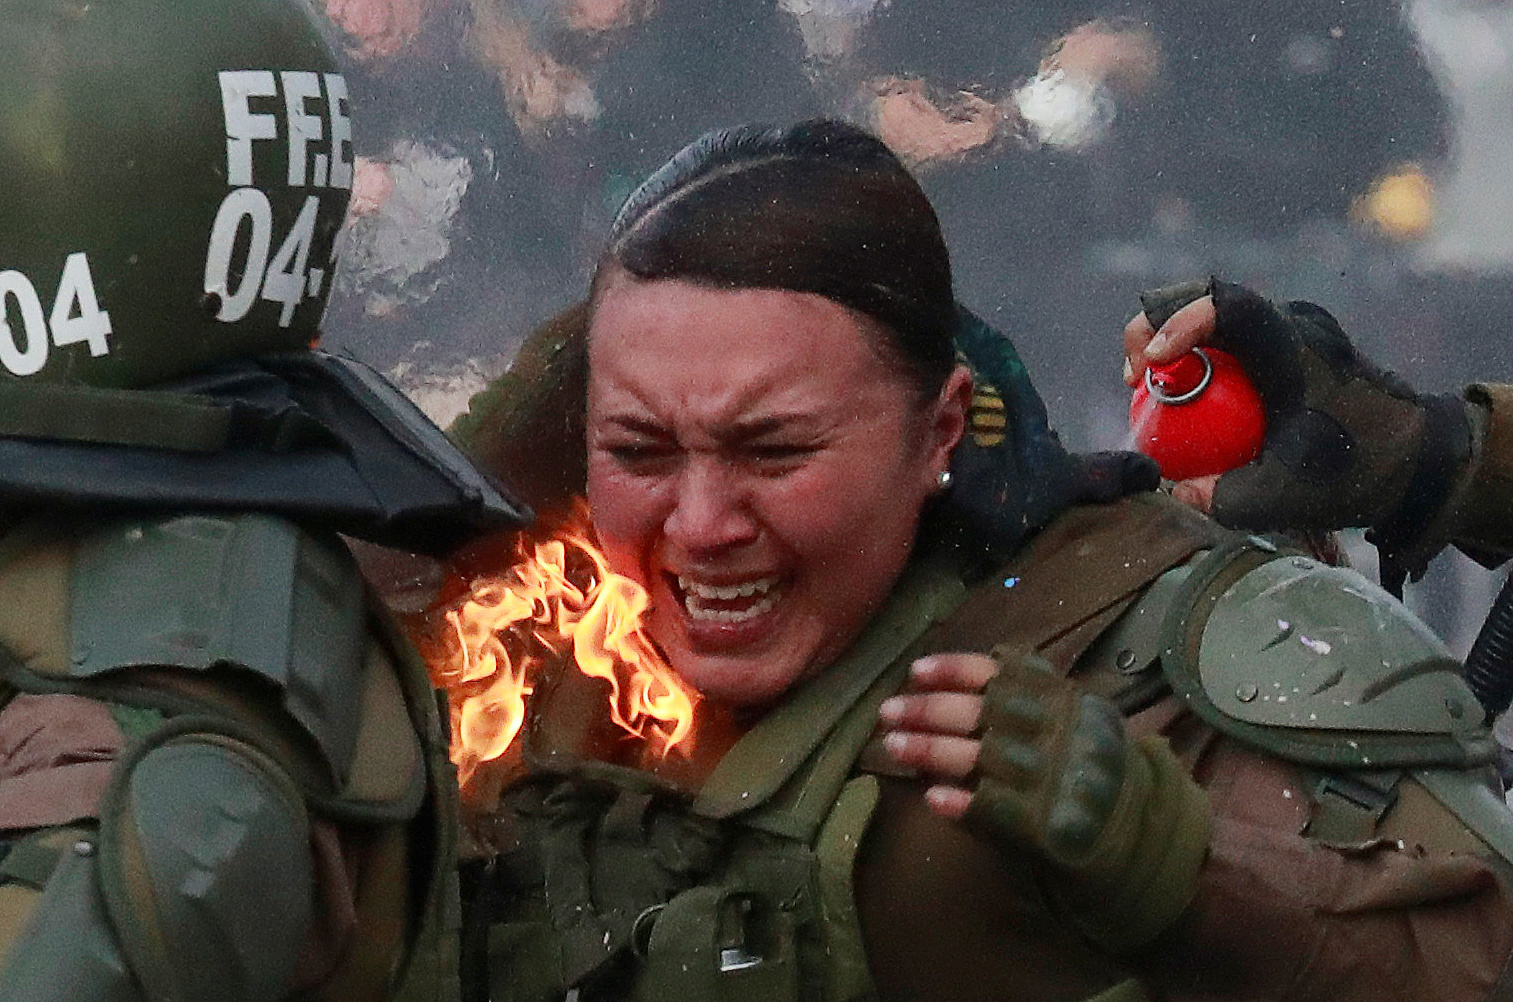 Dos policías chilenas envueltas en llamas por una molotov: La historia detrás de la foto